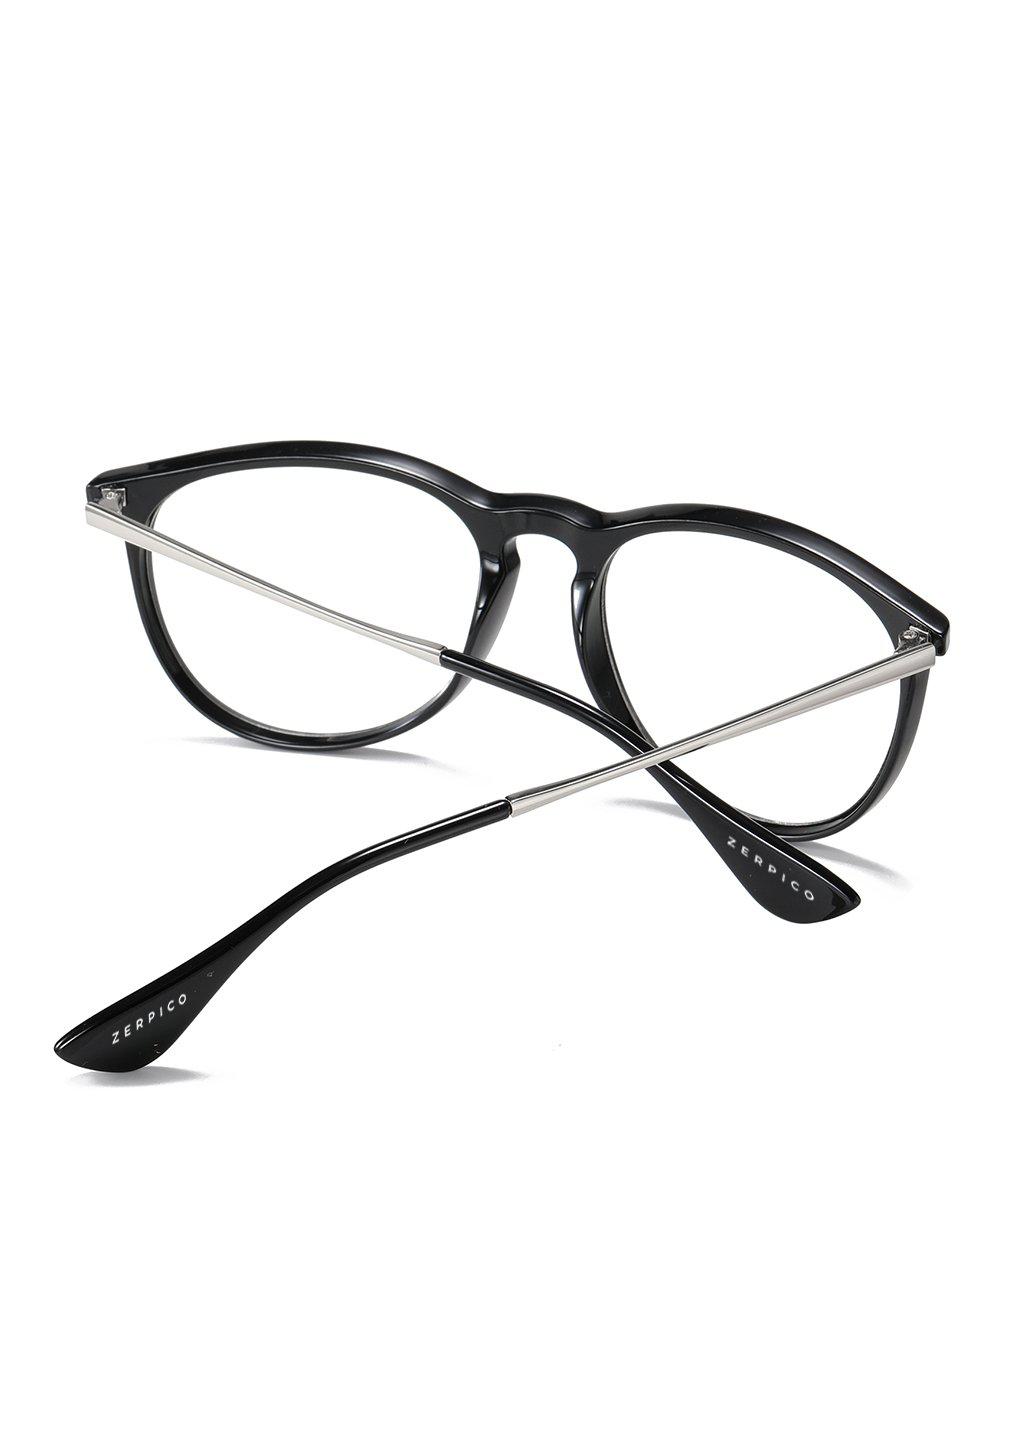 Nexus - Blue-light glasses - Nano-6